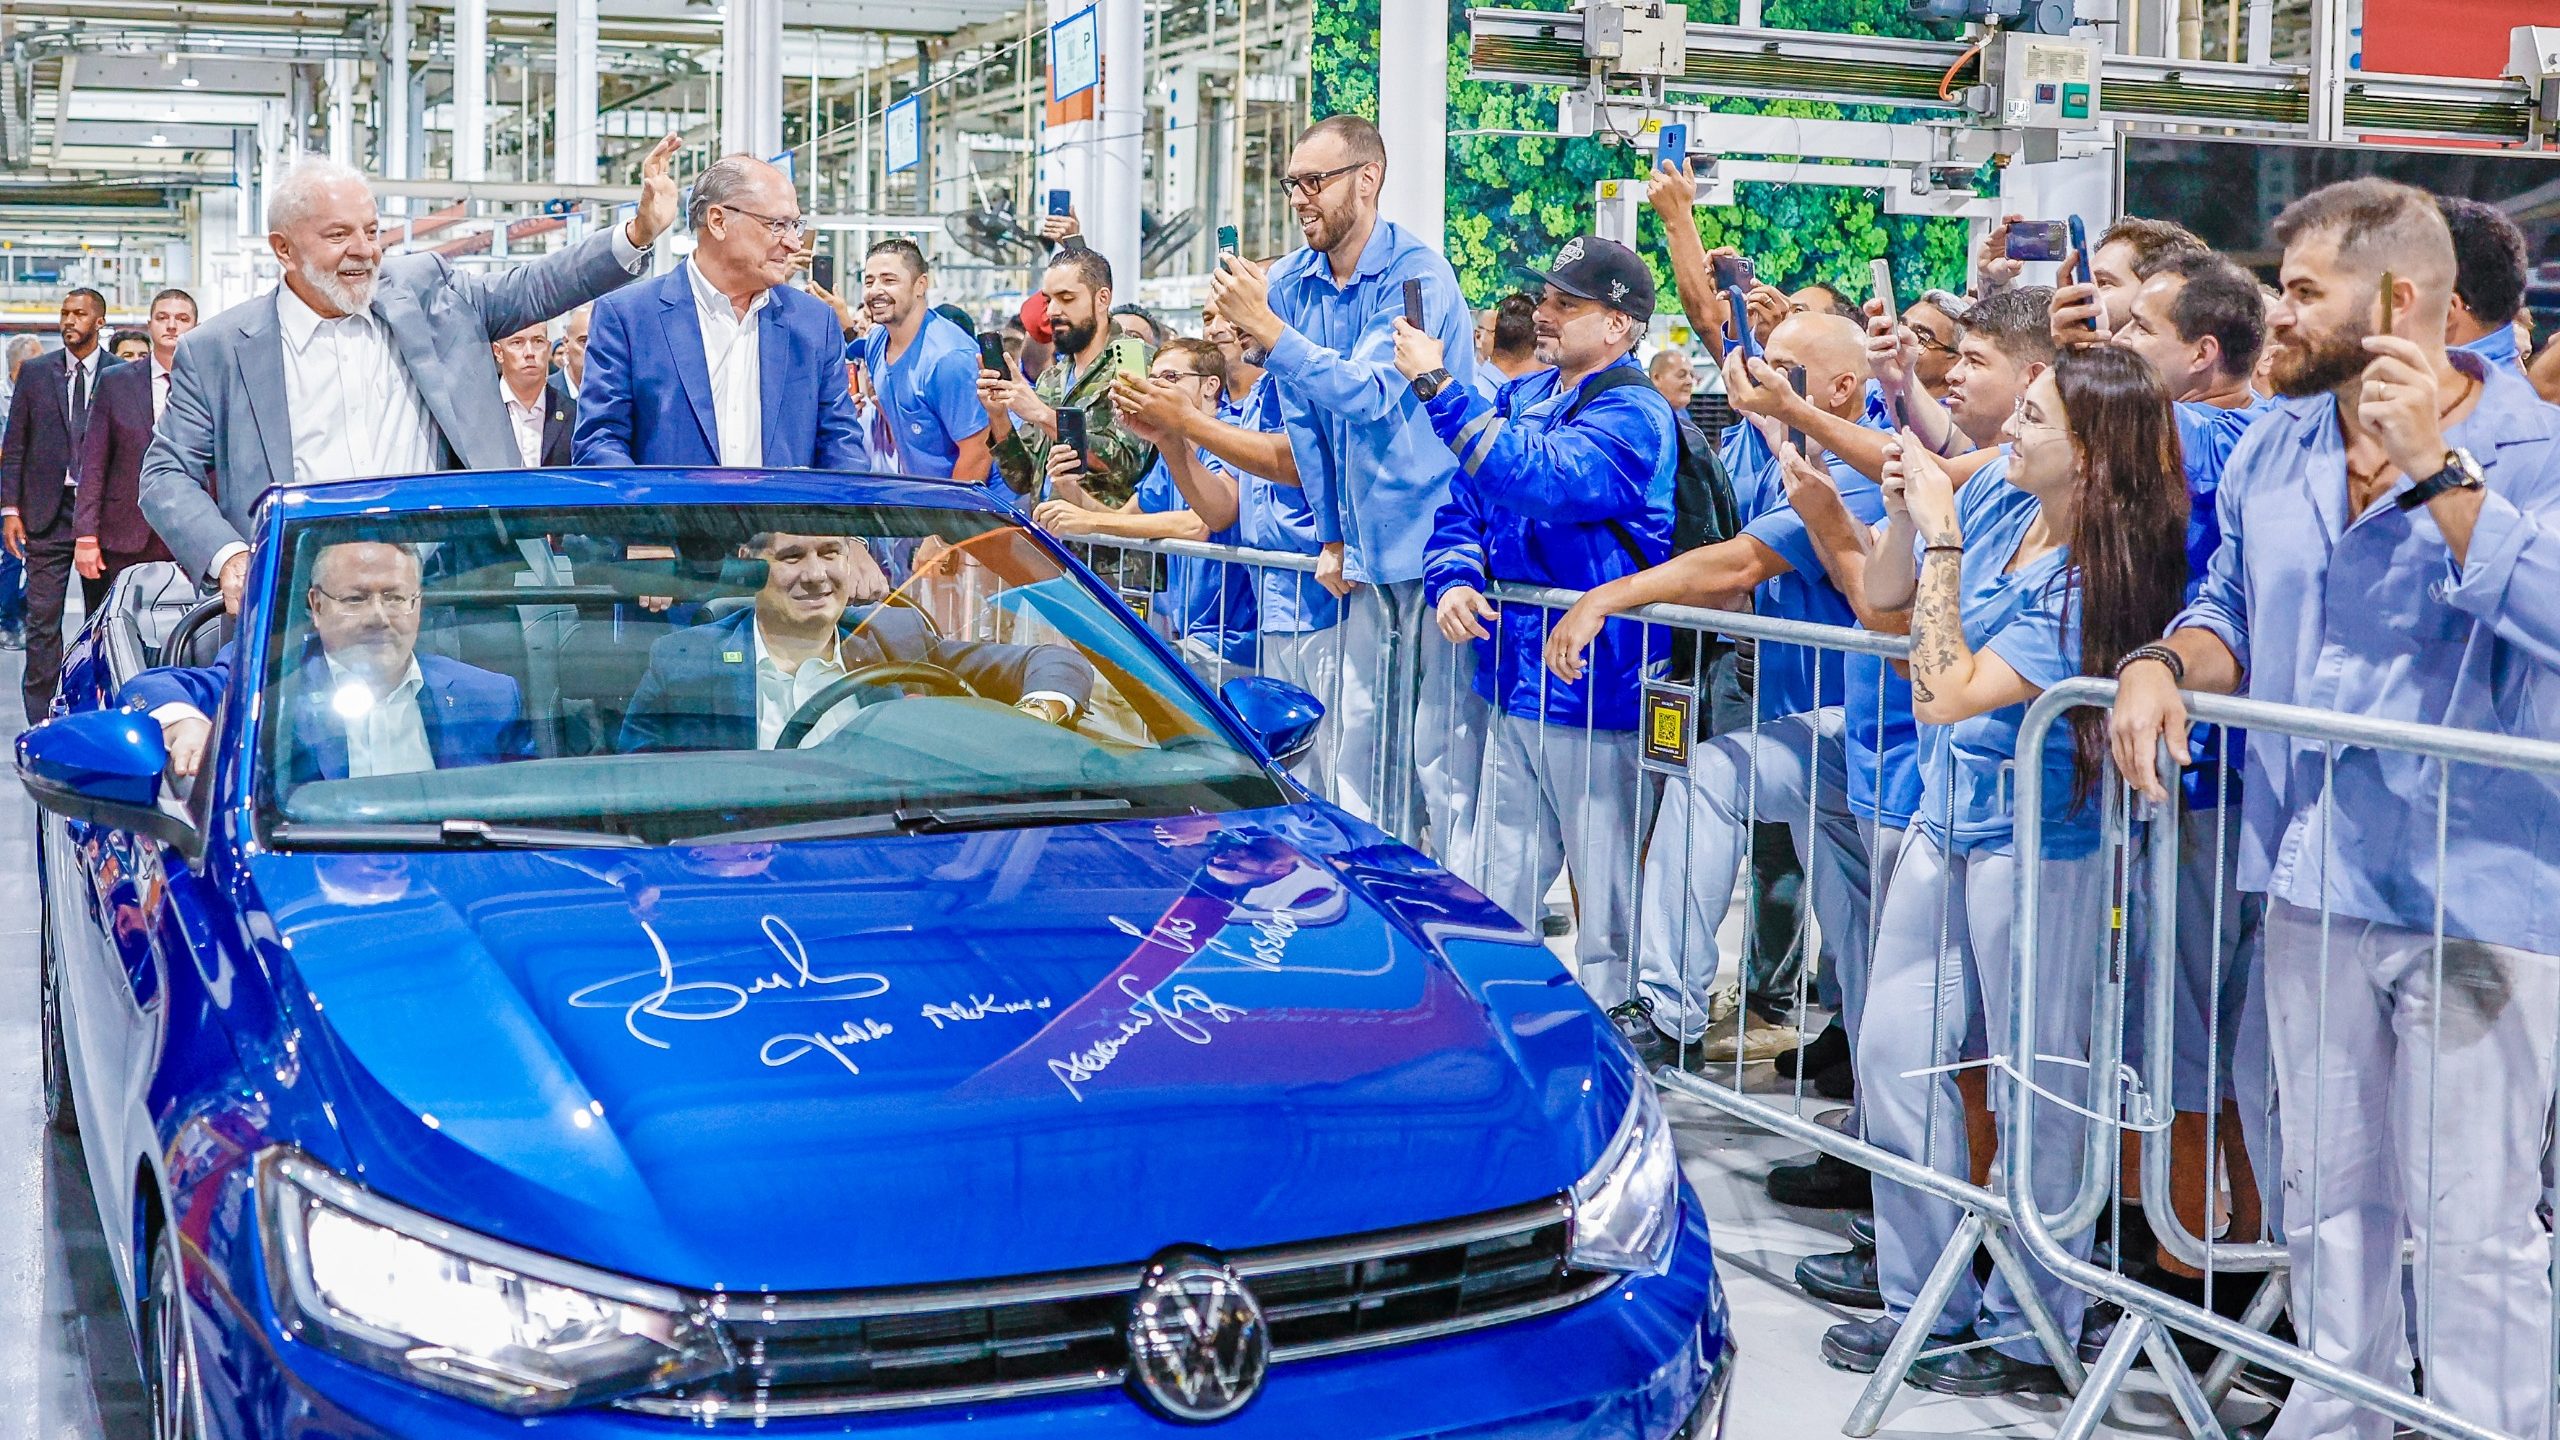 Montadora alemã Volkswagen anuncia R$ 16 bilhões em investimentos, depois de apoio do governo Lula à indústria automotiva. Na imagem: Lula e Alckmin em modelo Volkswagen durante anúncio de plano de investimentos da montadora no Brasil (Foto: Ricardo Stuckert/PR)